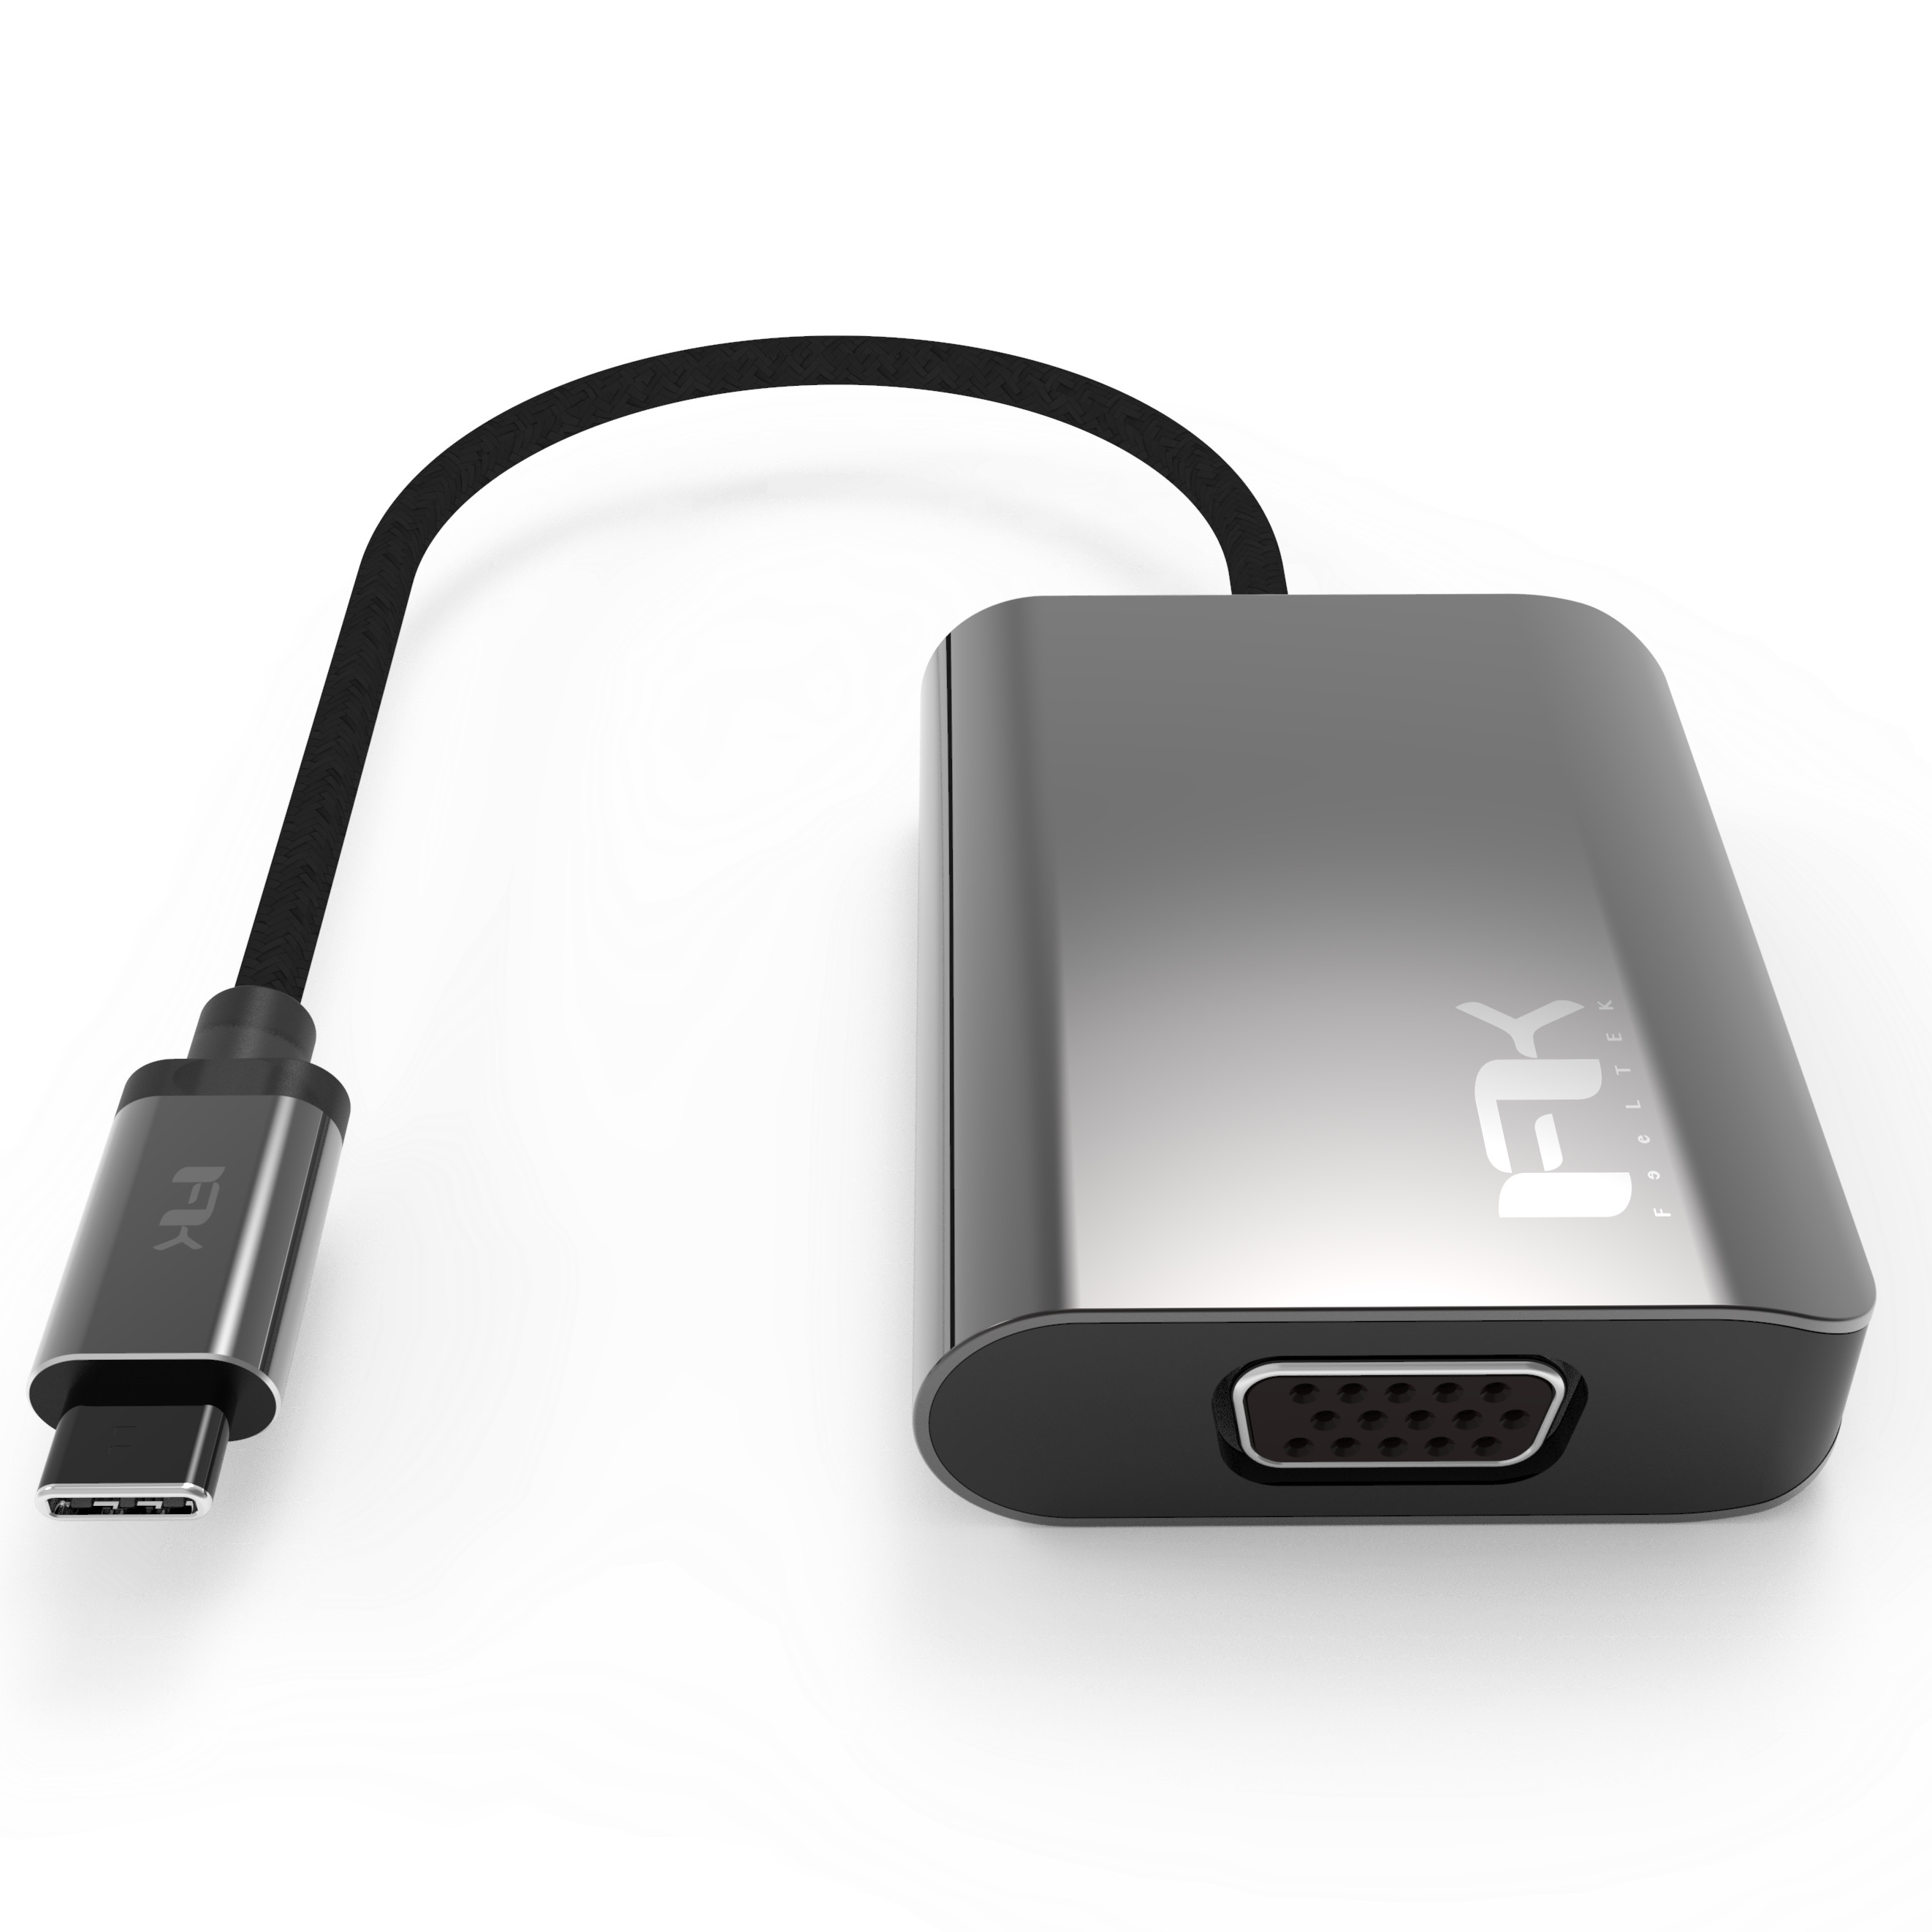 HUB Chuyển Đổi USB Type C Sang HDMI / VGA Display 2 in 1 Feeltek - Hàng Chính Hãng